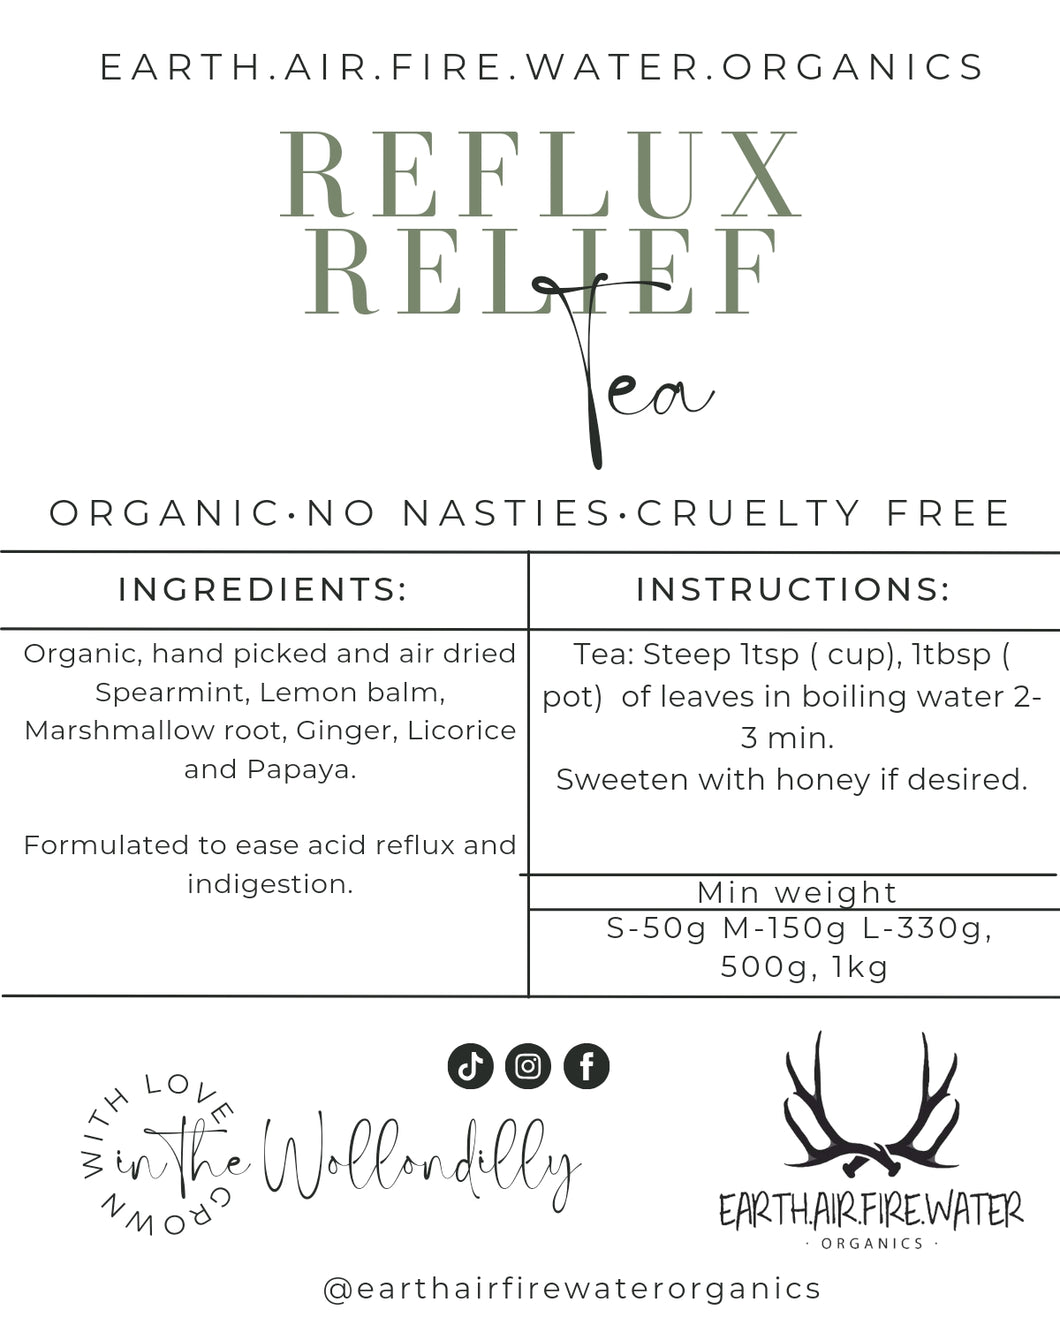 Reflux relief